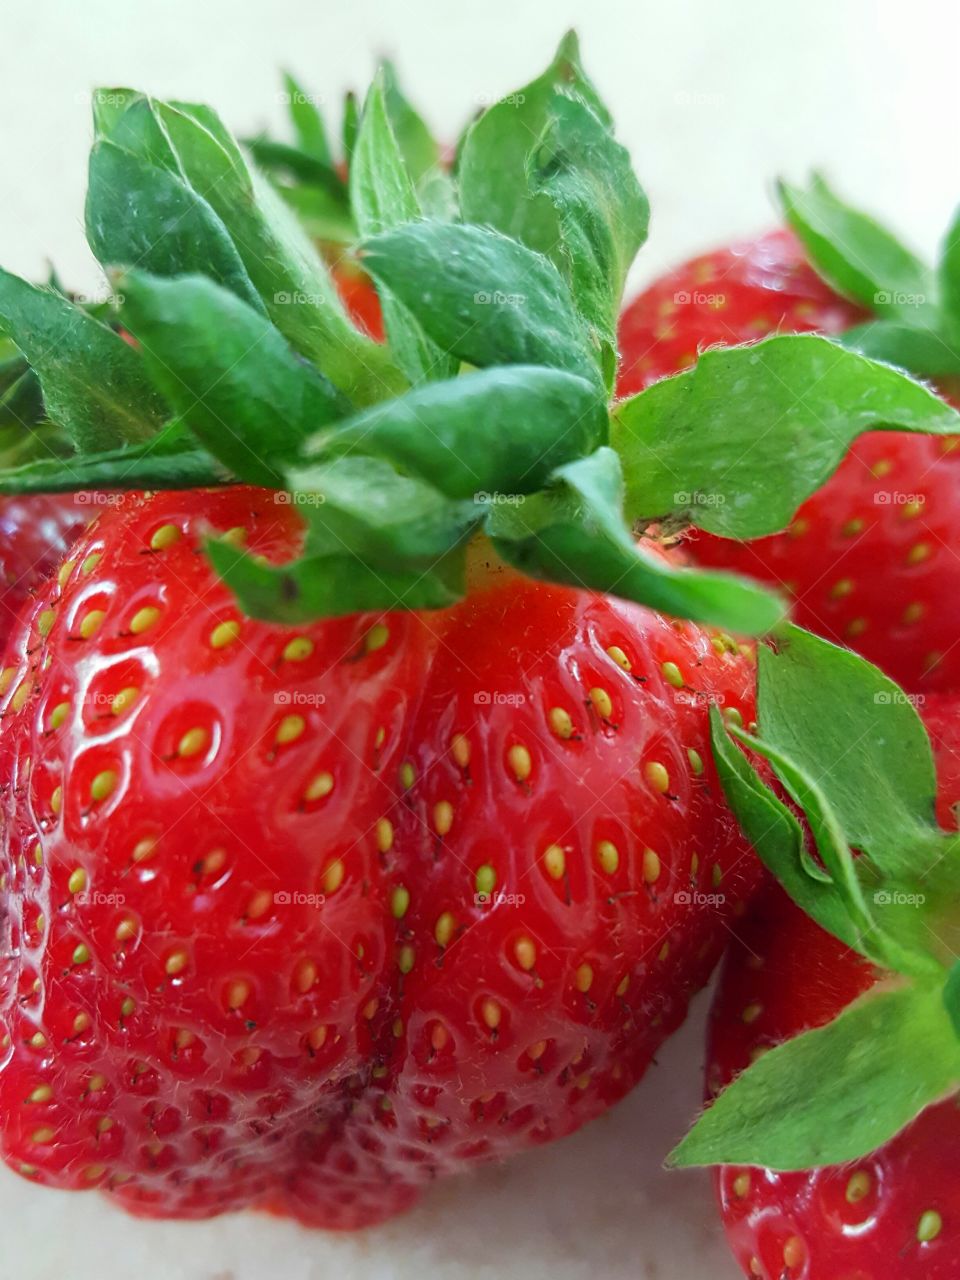 Sweet strawberries